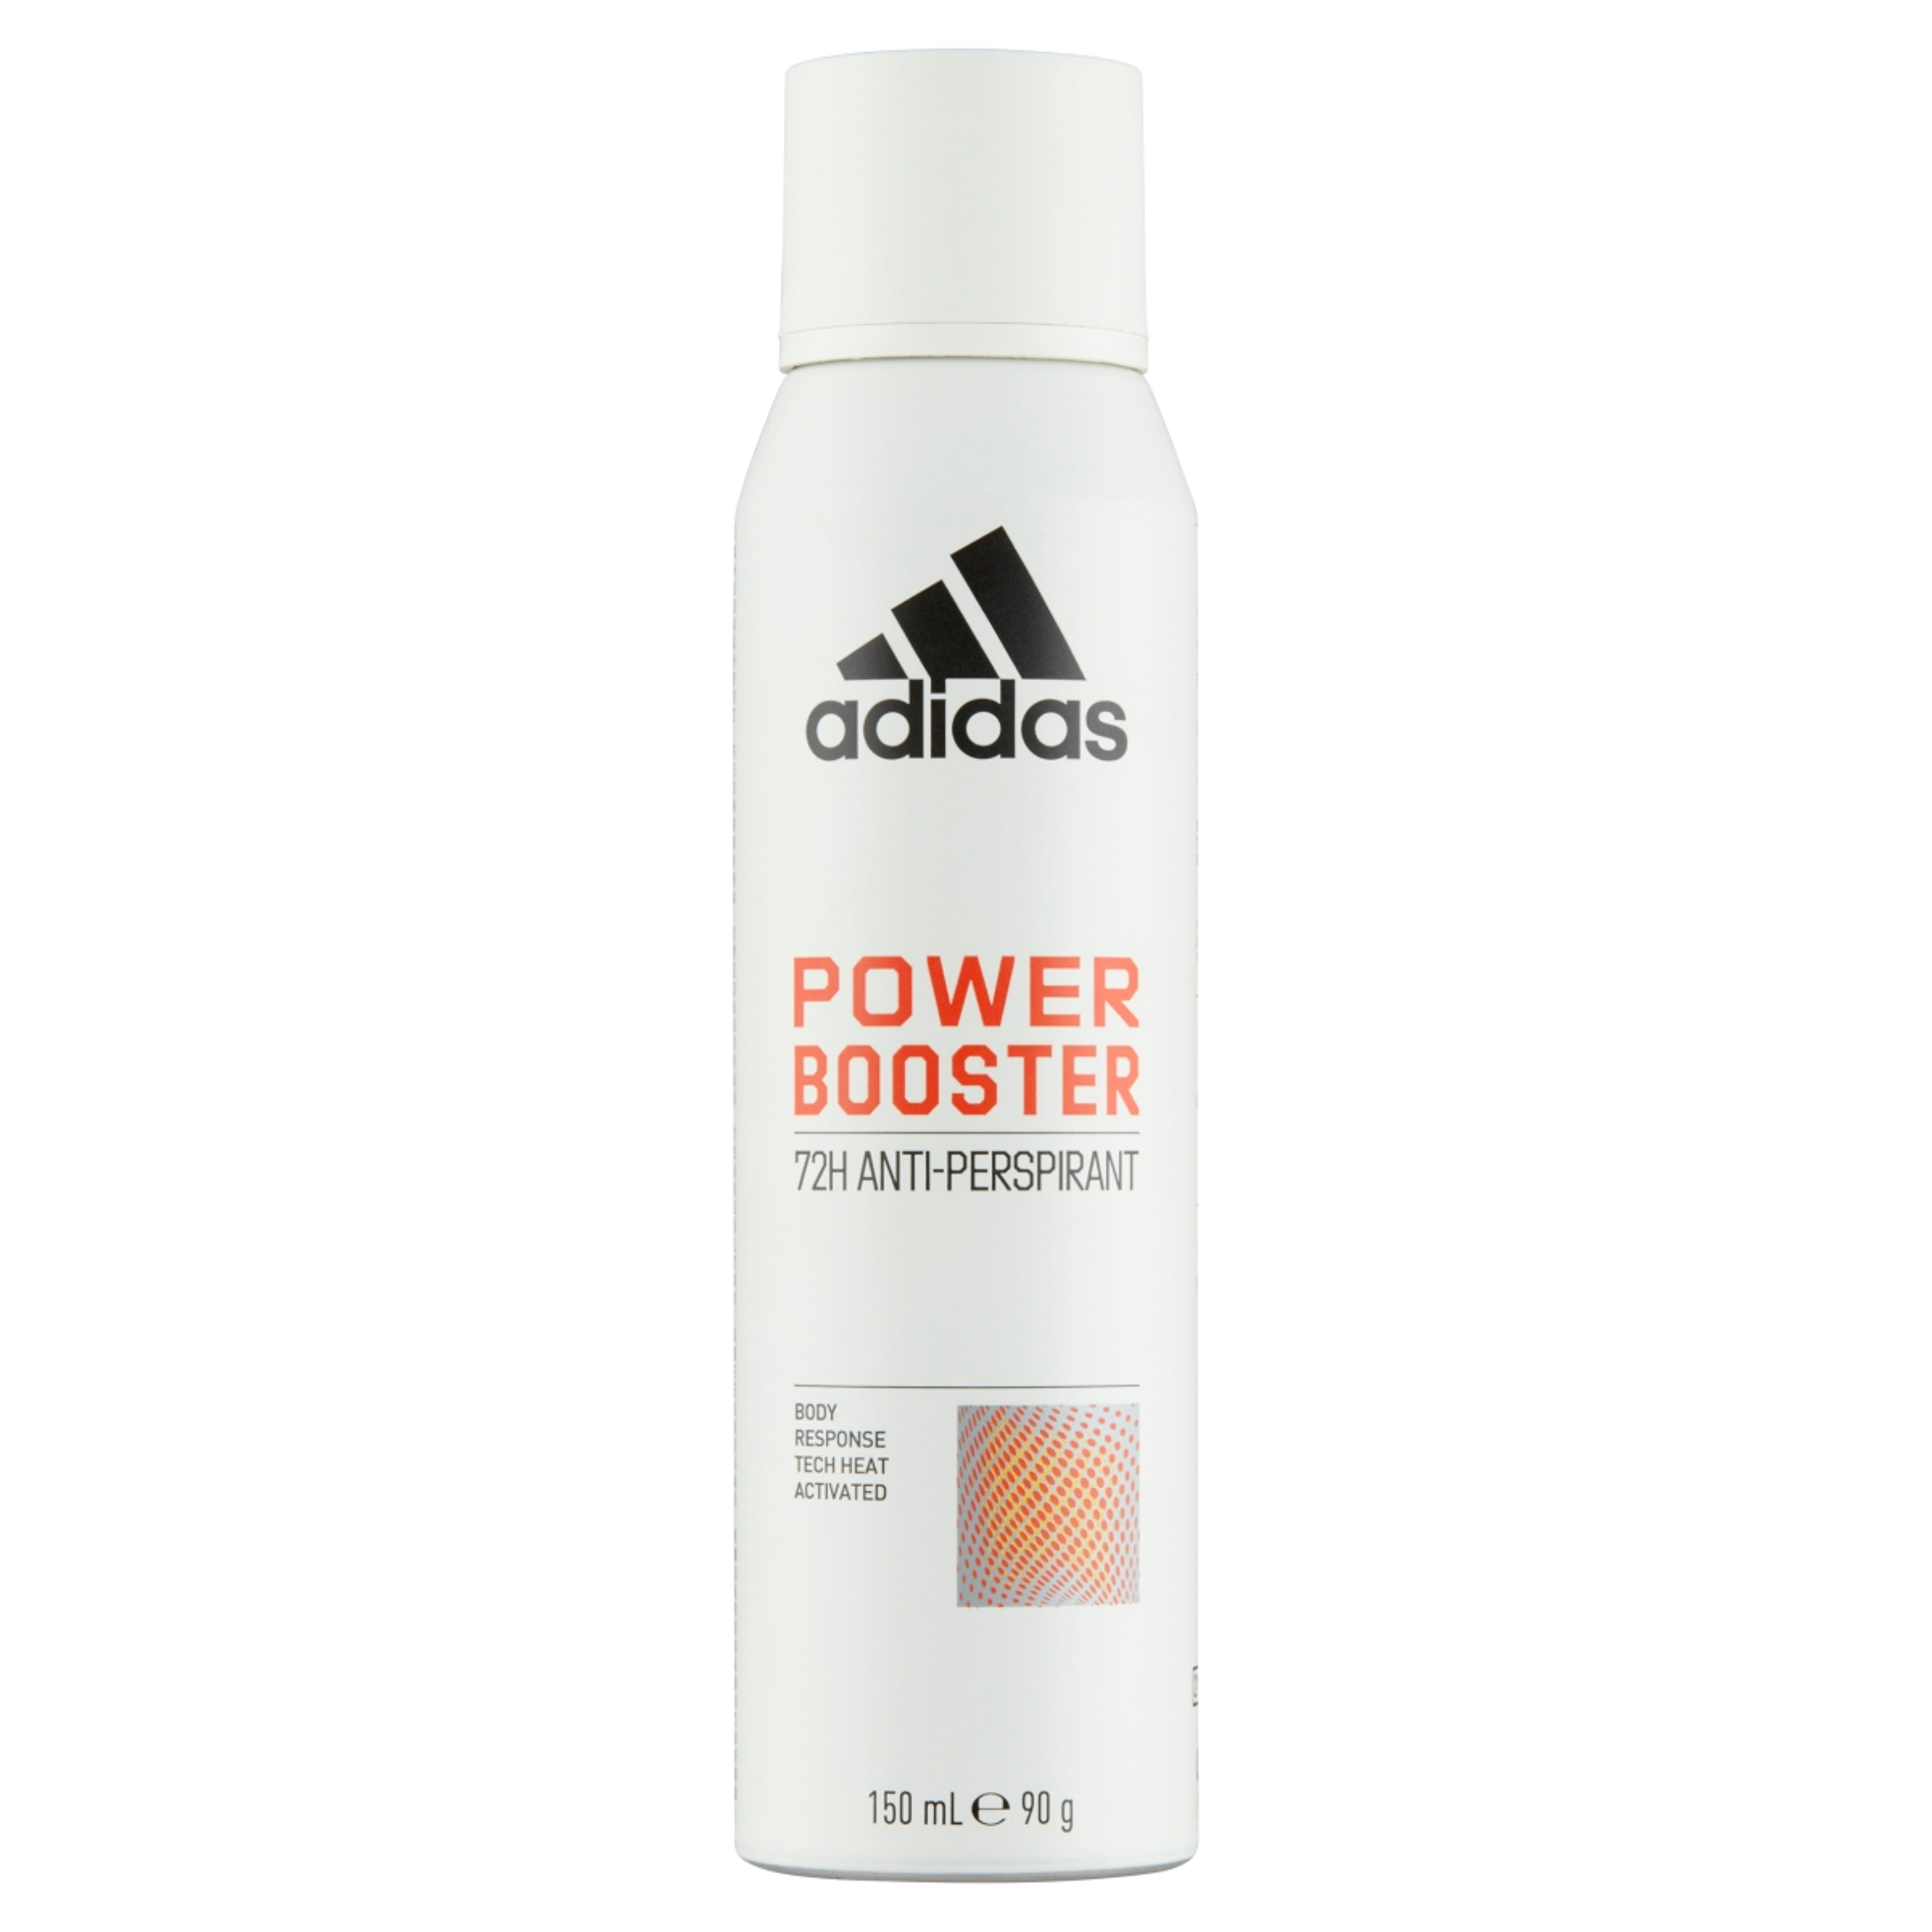 Adidas Power Booster női izzadásgátló dezodor - 150 ml-1